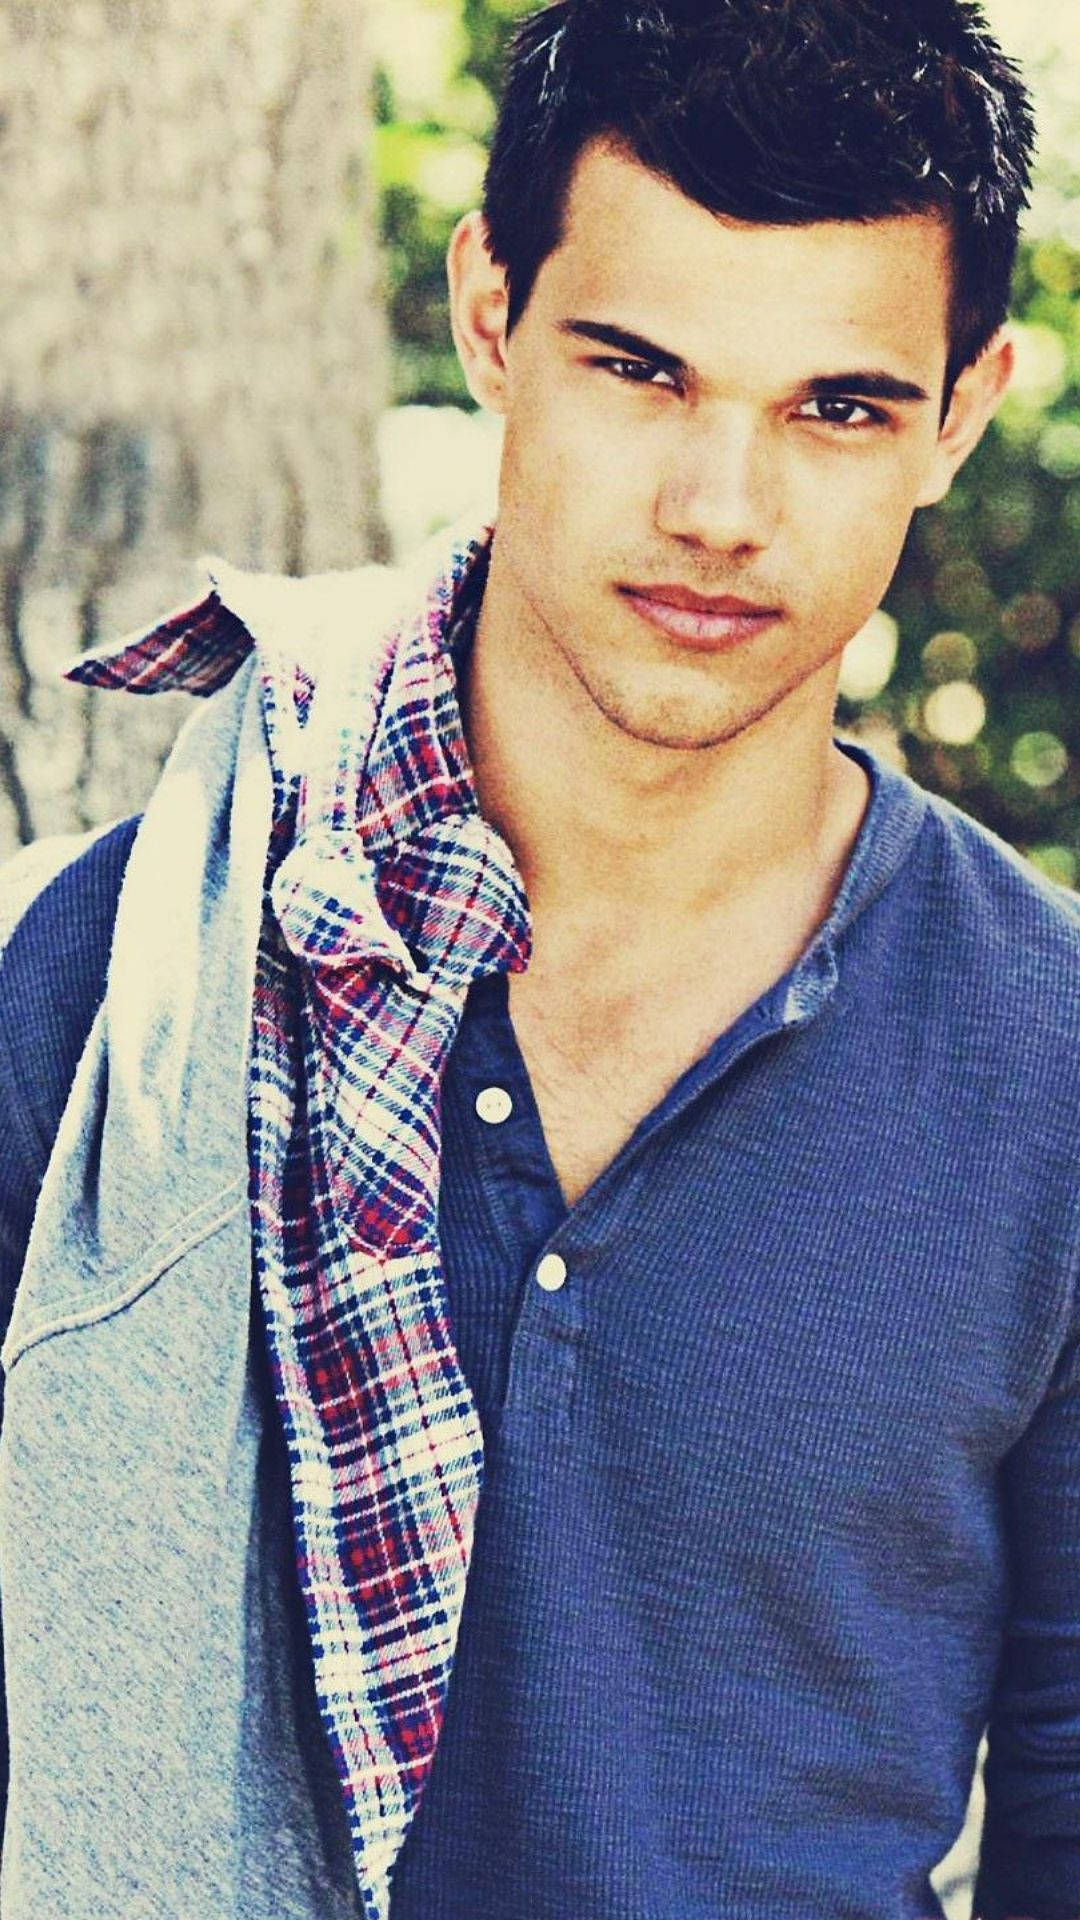 Taylor Lautner Modeling Outside Wallpaper